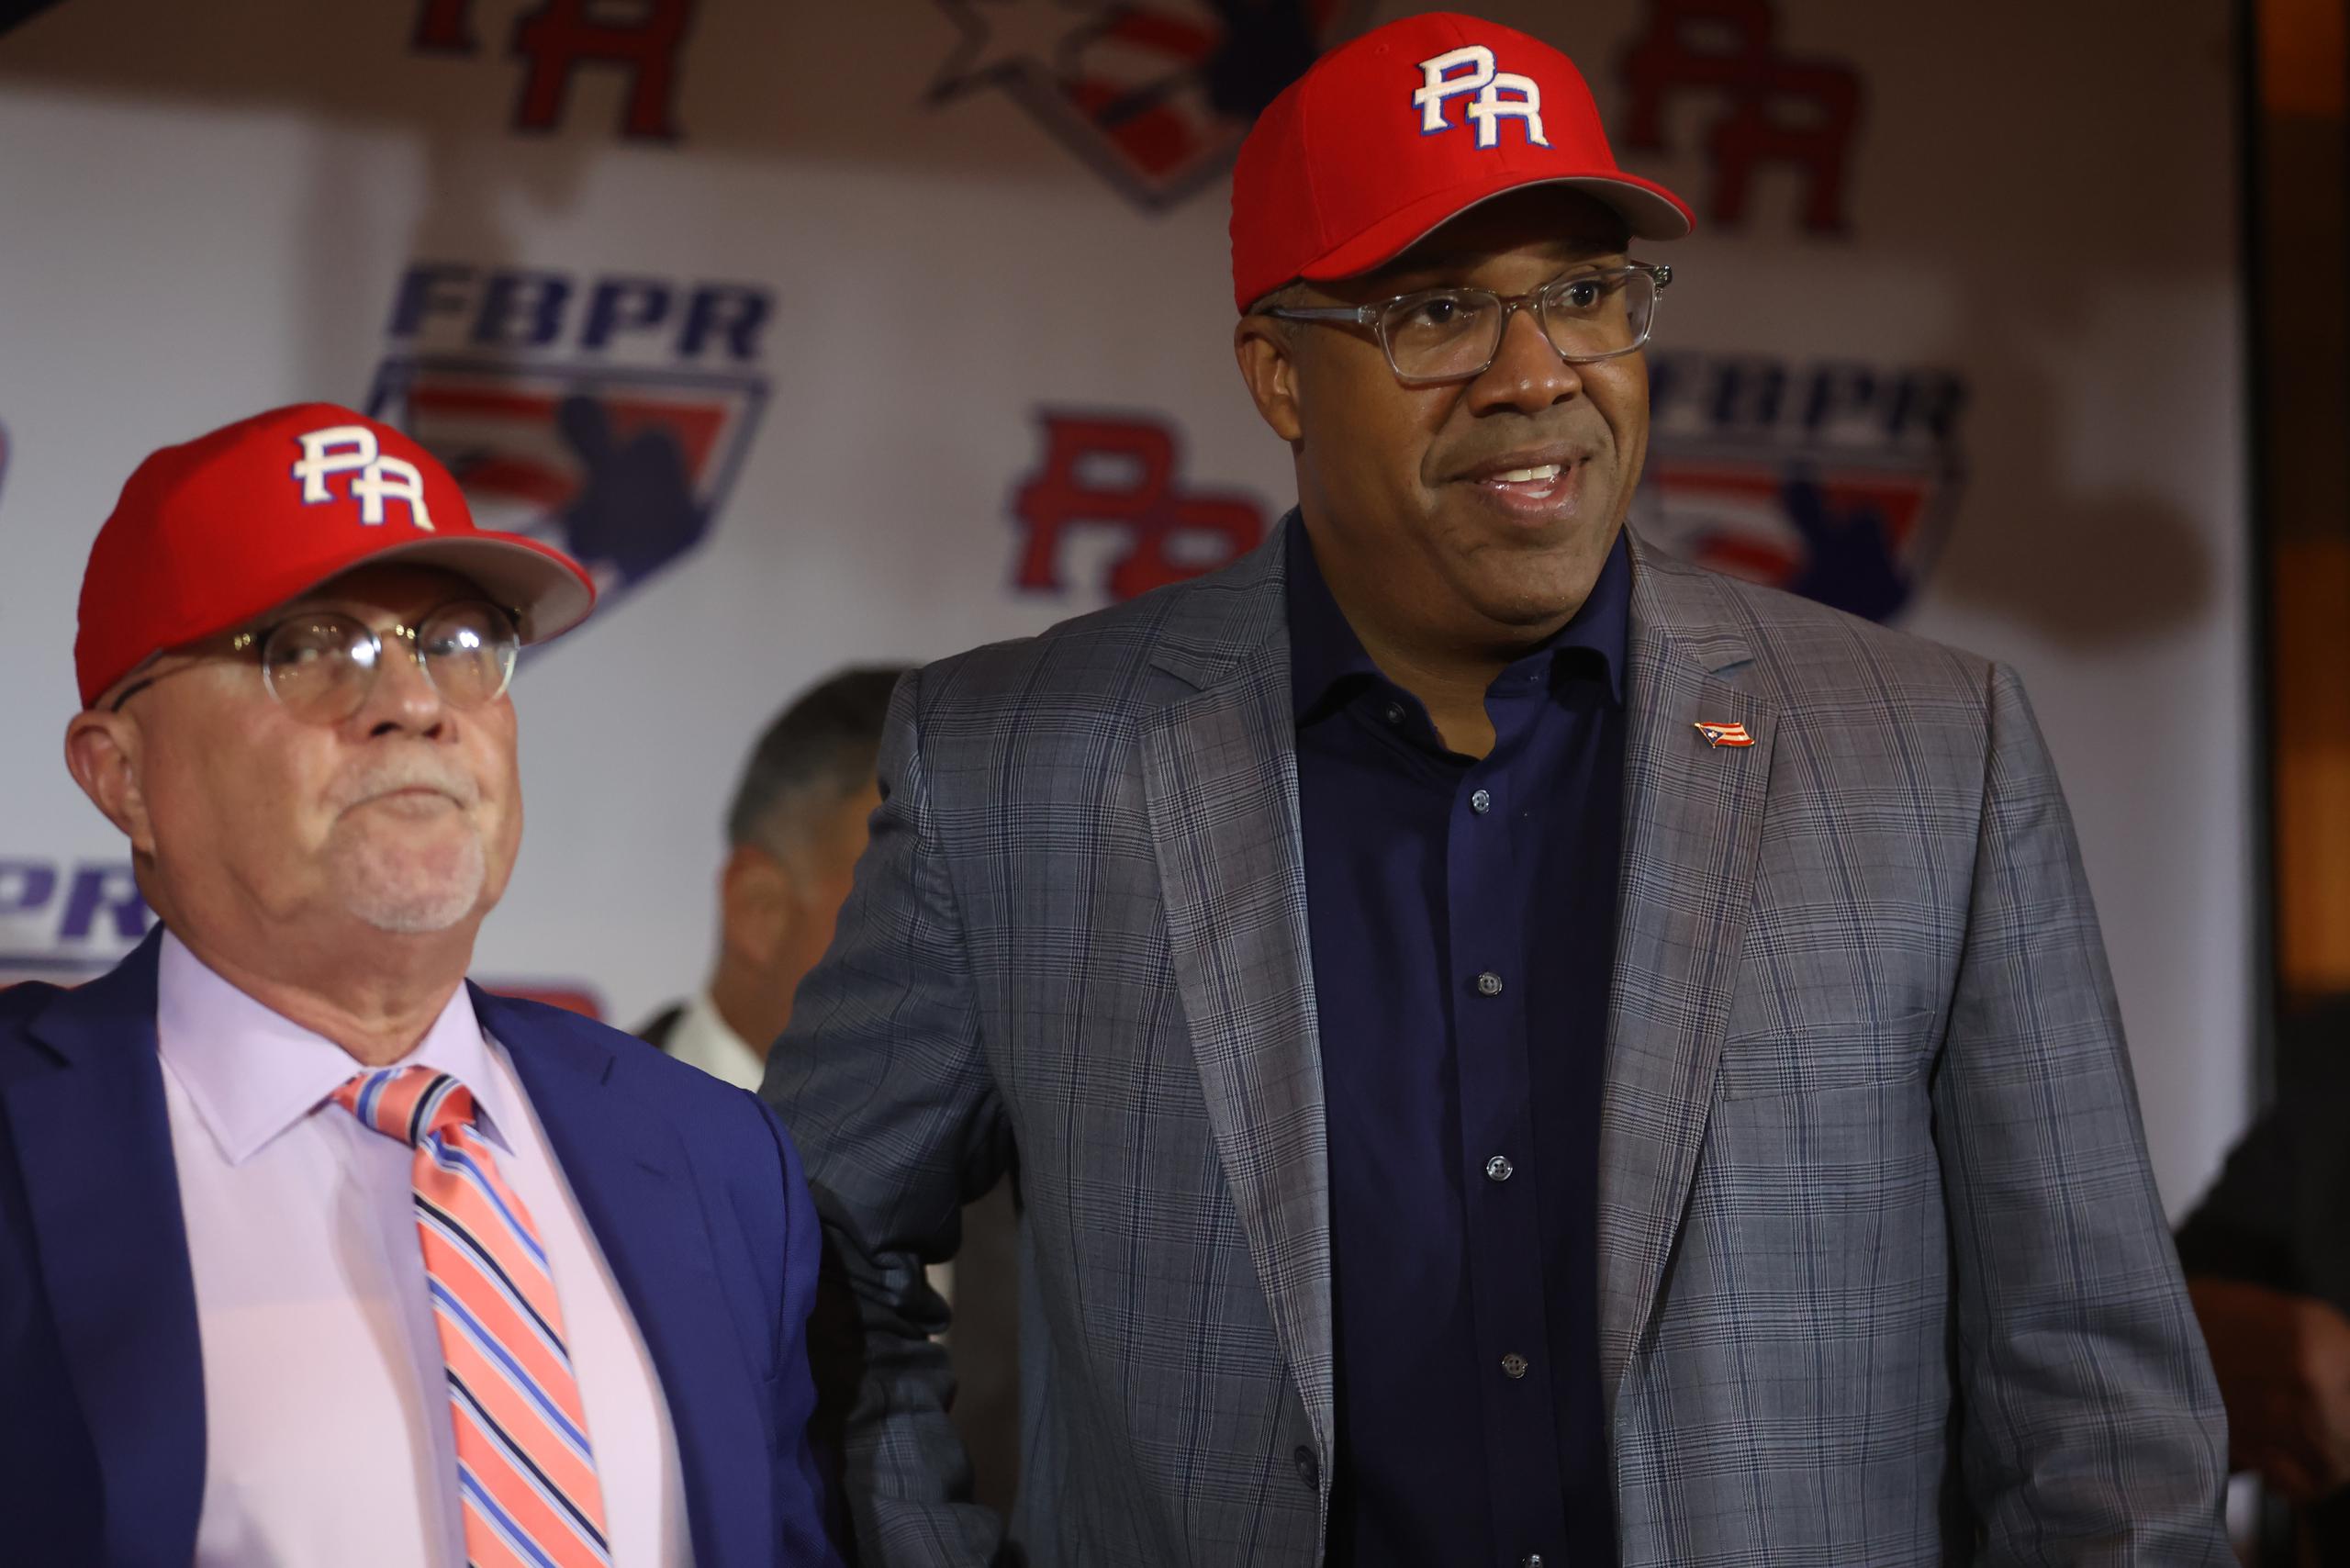 A la izquierda, el presidente de la Federación de Béisbol de Puerto Rico, José Quiles, alega que fue malinterpretado.